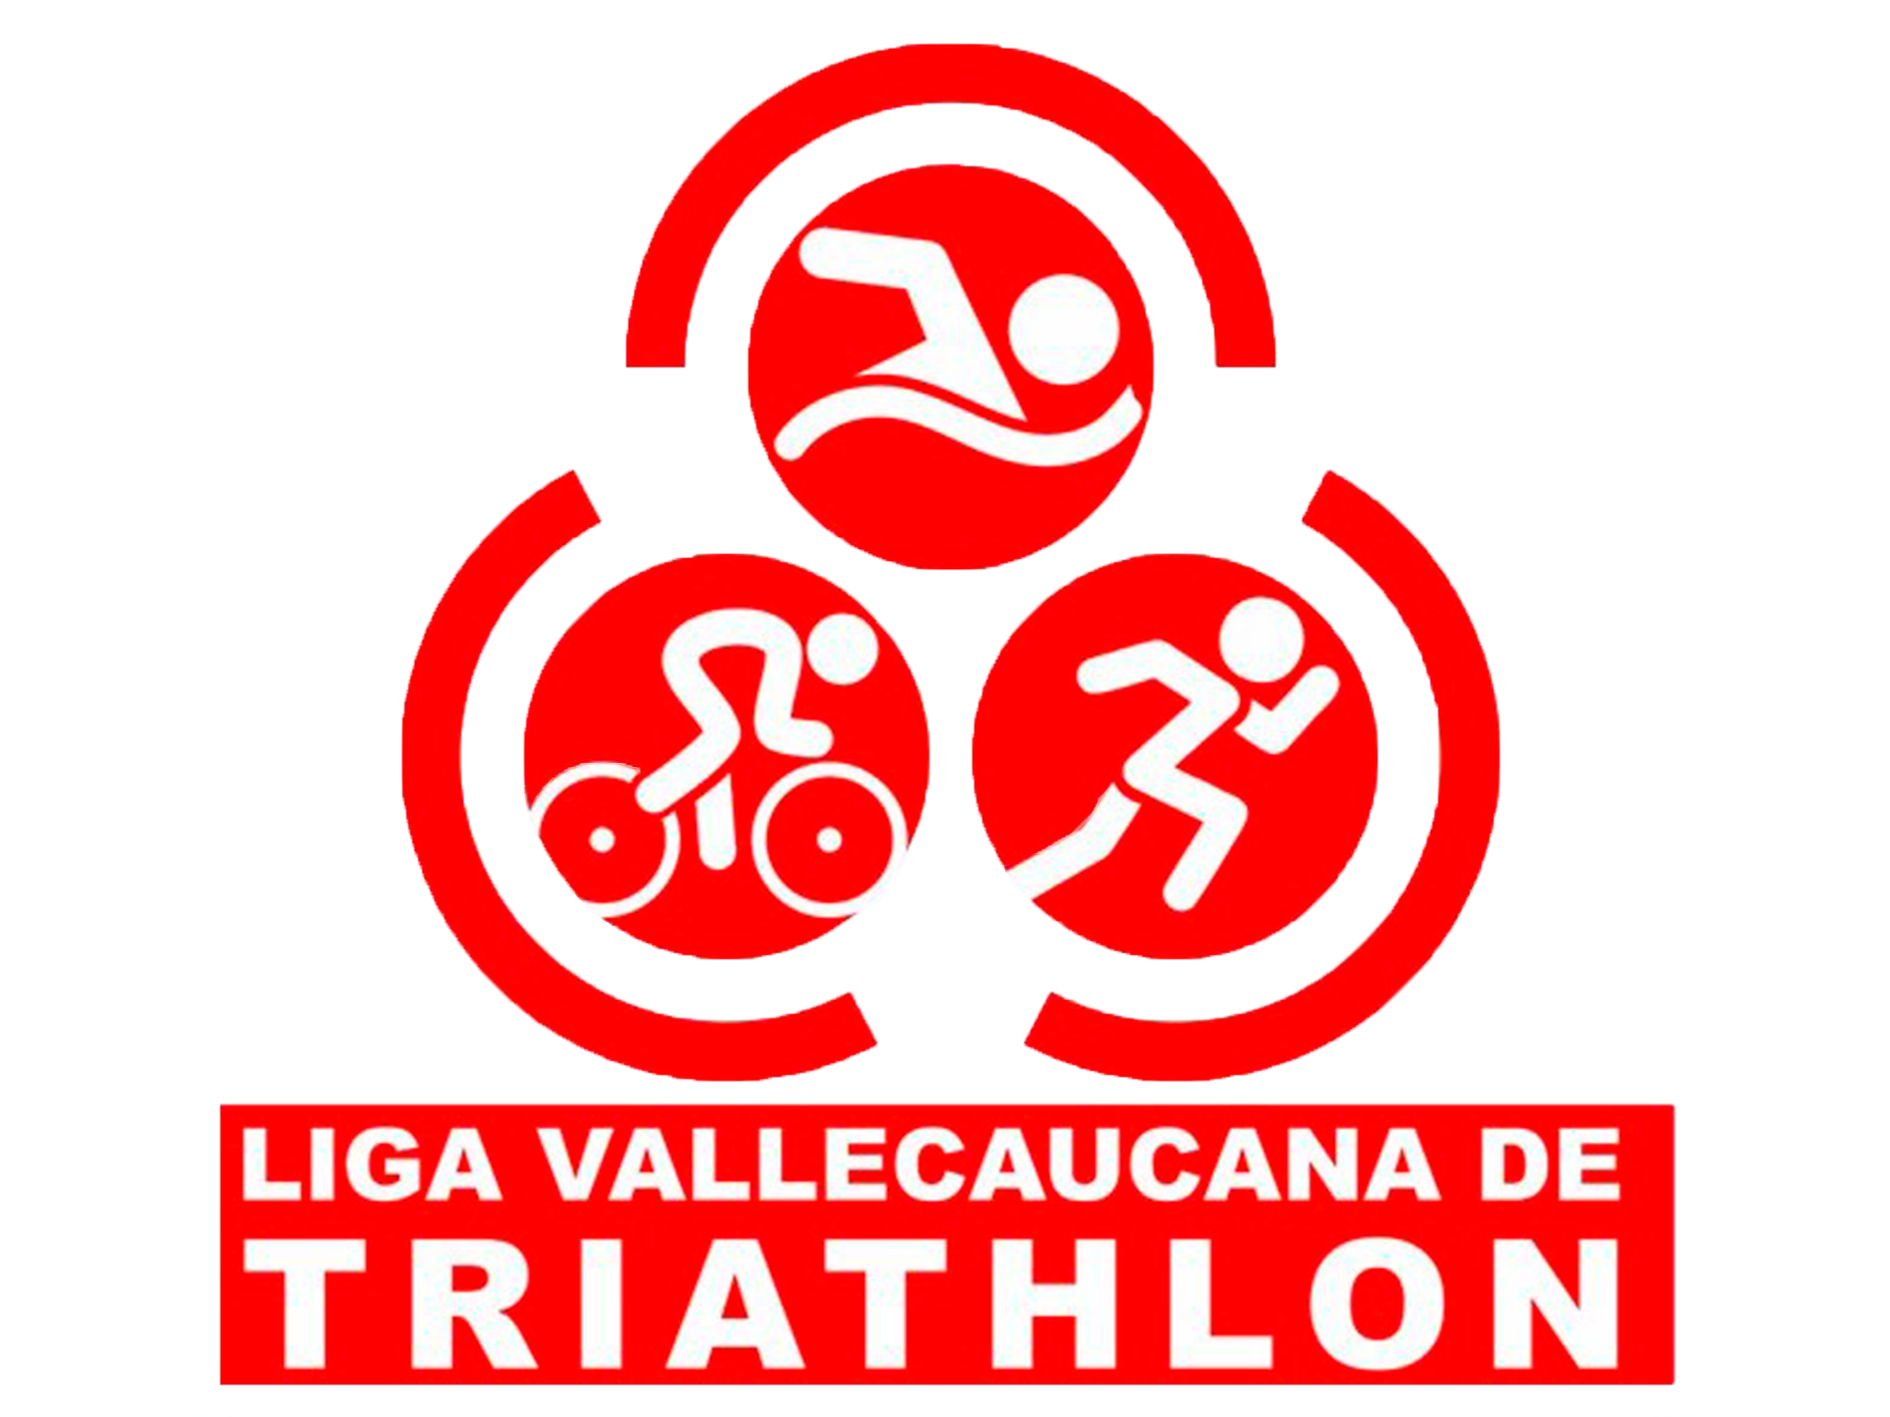 Liga Valle caucana de Triathlon